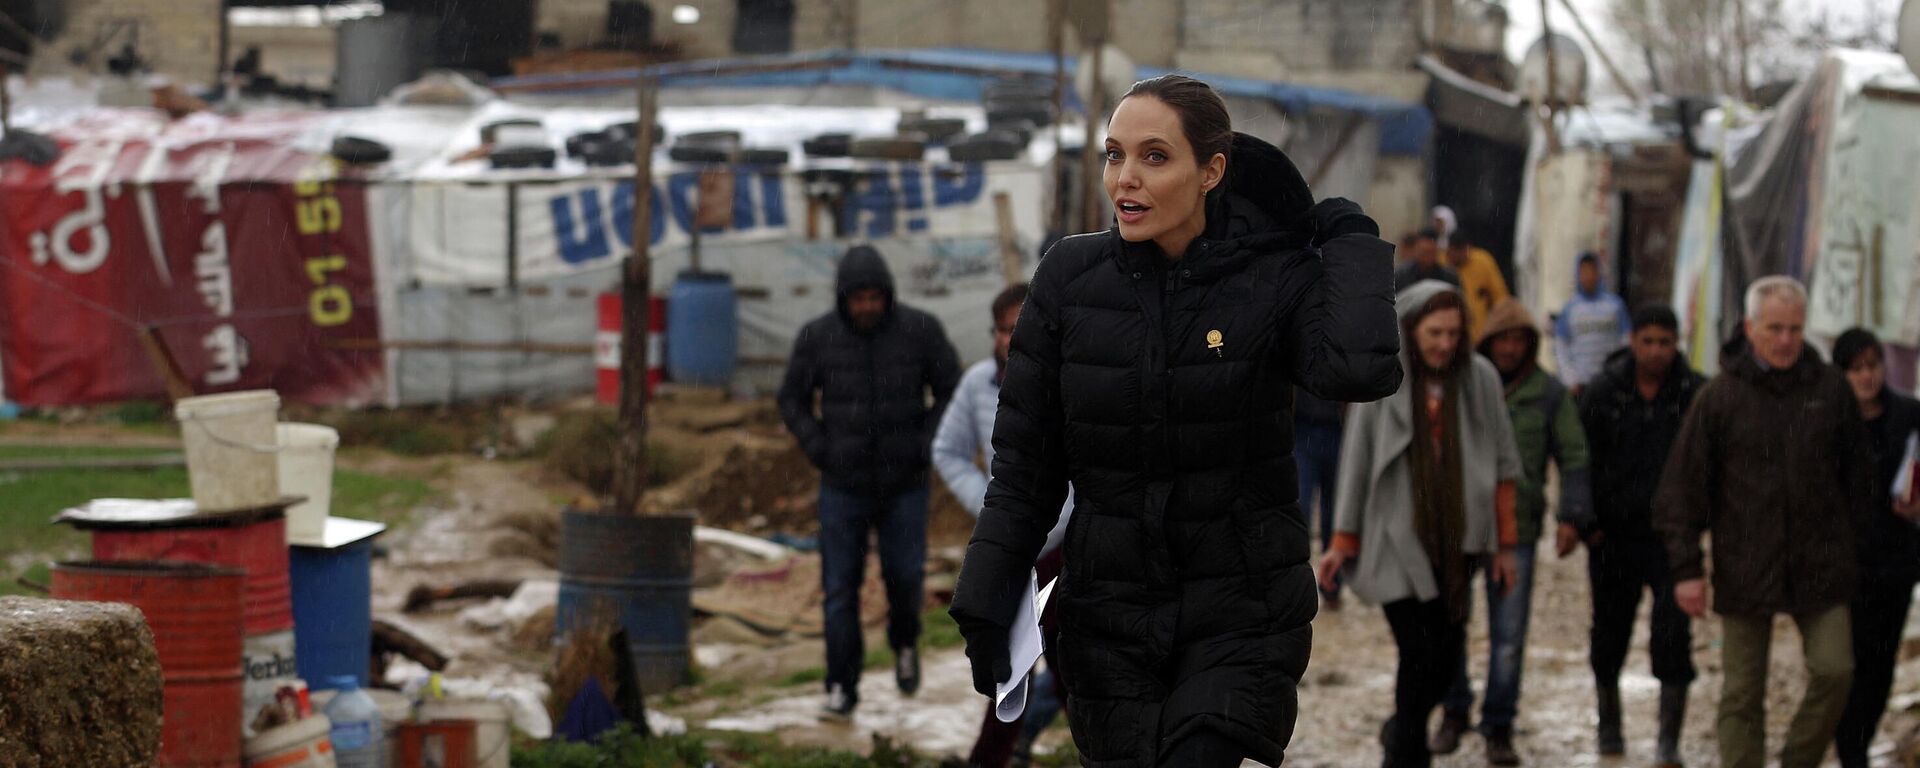 Angelina Jolie, Lübnan'daki Suriyeli mültecilerin kampını ziyaret etti - 2016 - Sputnik Türkiye, 1920, 16.09.2022